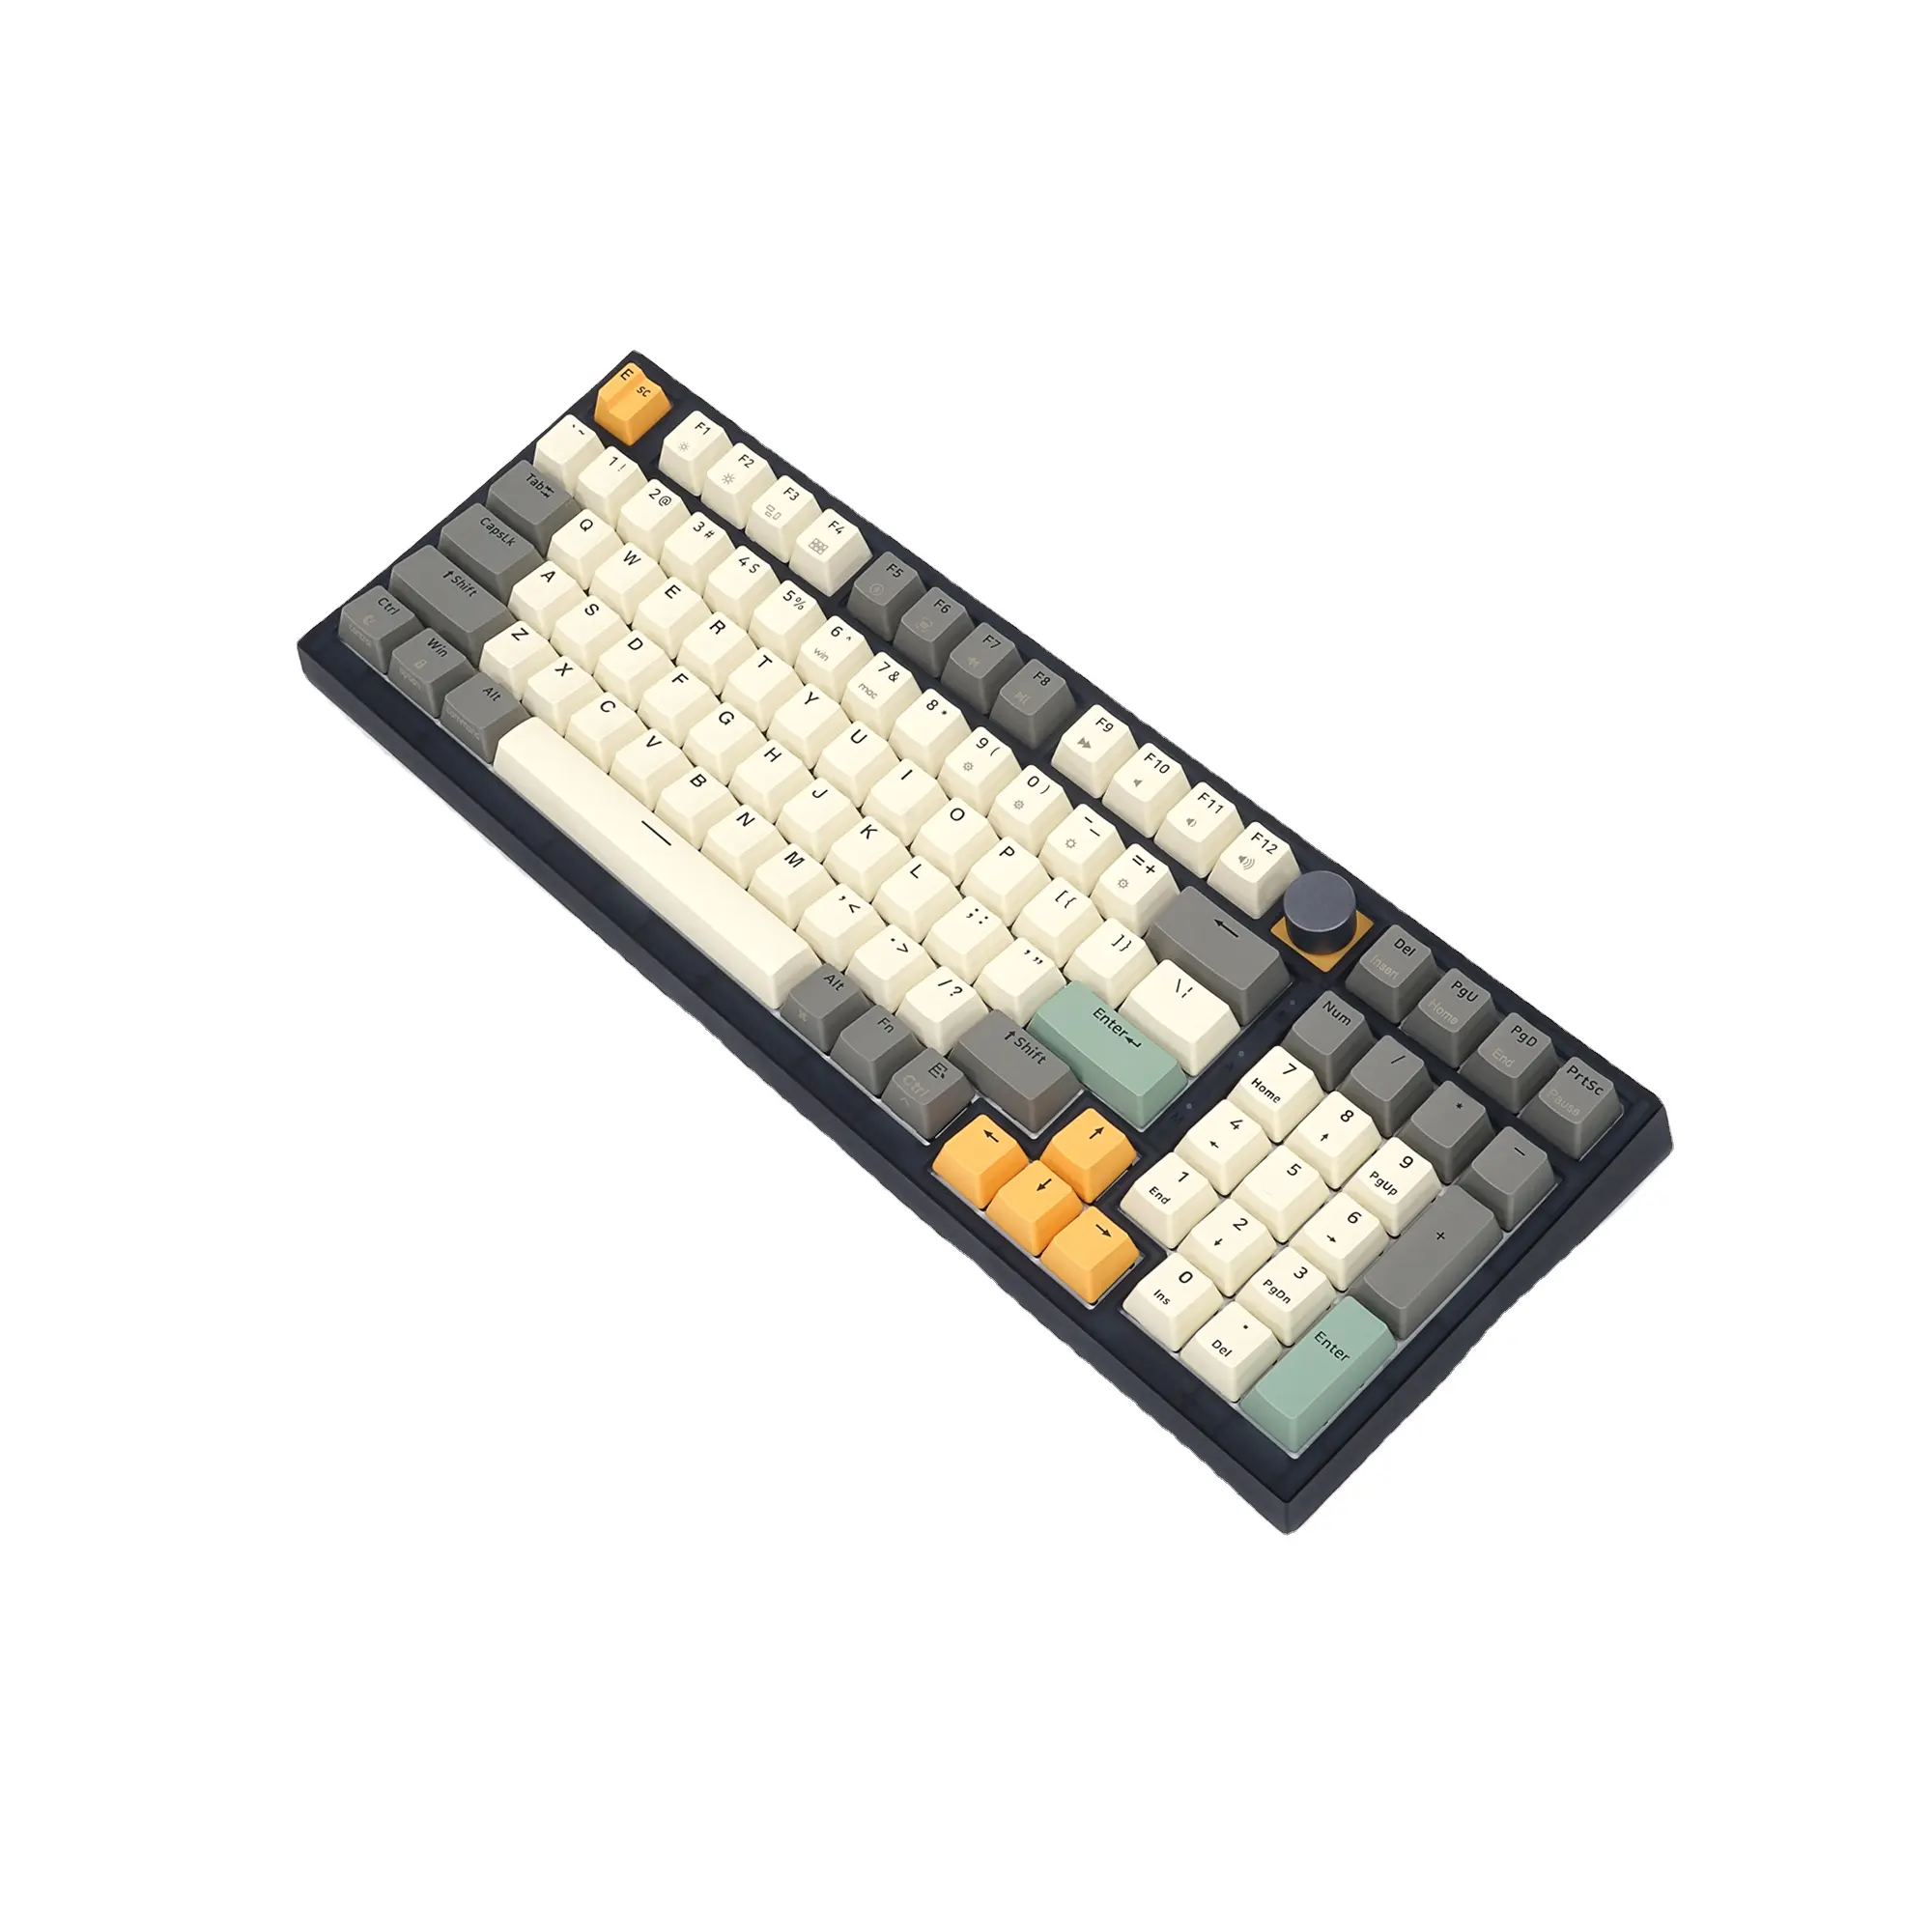 Clavier Skyloong Oem fabricant GK980 clavier de jeu sans fil avec chiffres 100% bouton de clavier mécanique Rgb